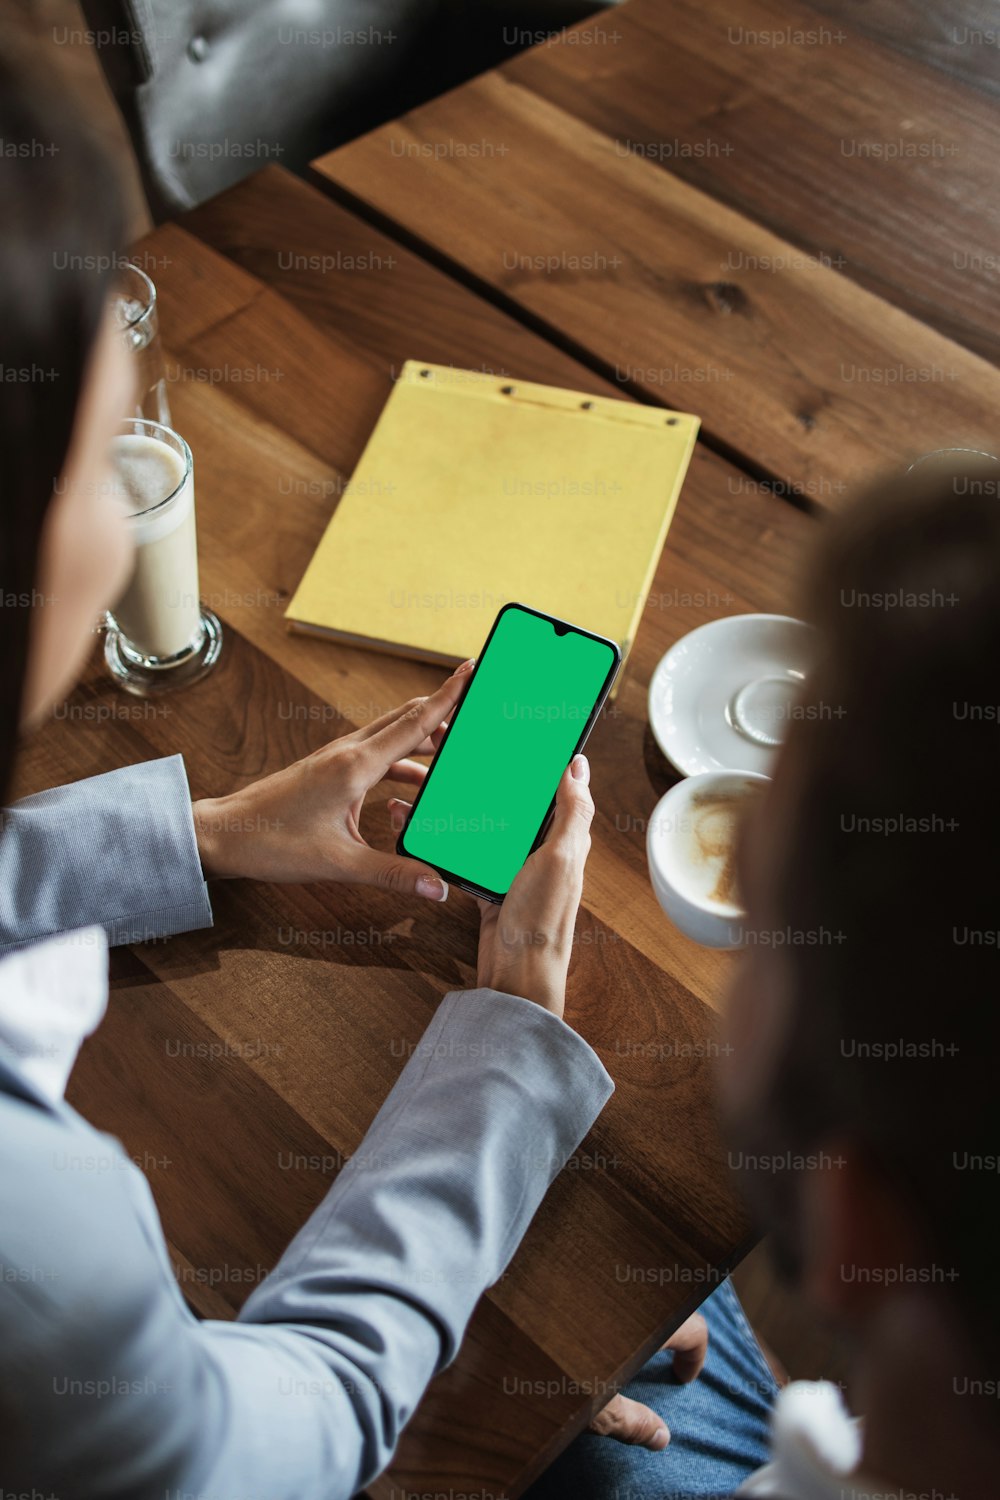 会議や昼食中に、モダンなカフェレストランのビンテージの木製テーブルの上に空白の緑色の画面が付いたスマート携帯電話を持つビジネスマンのモックアップ画像。